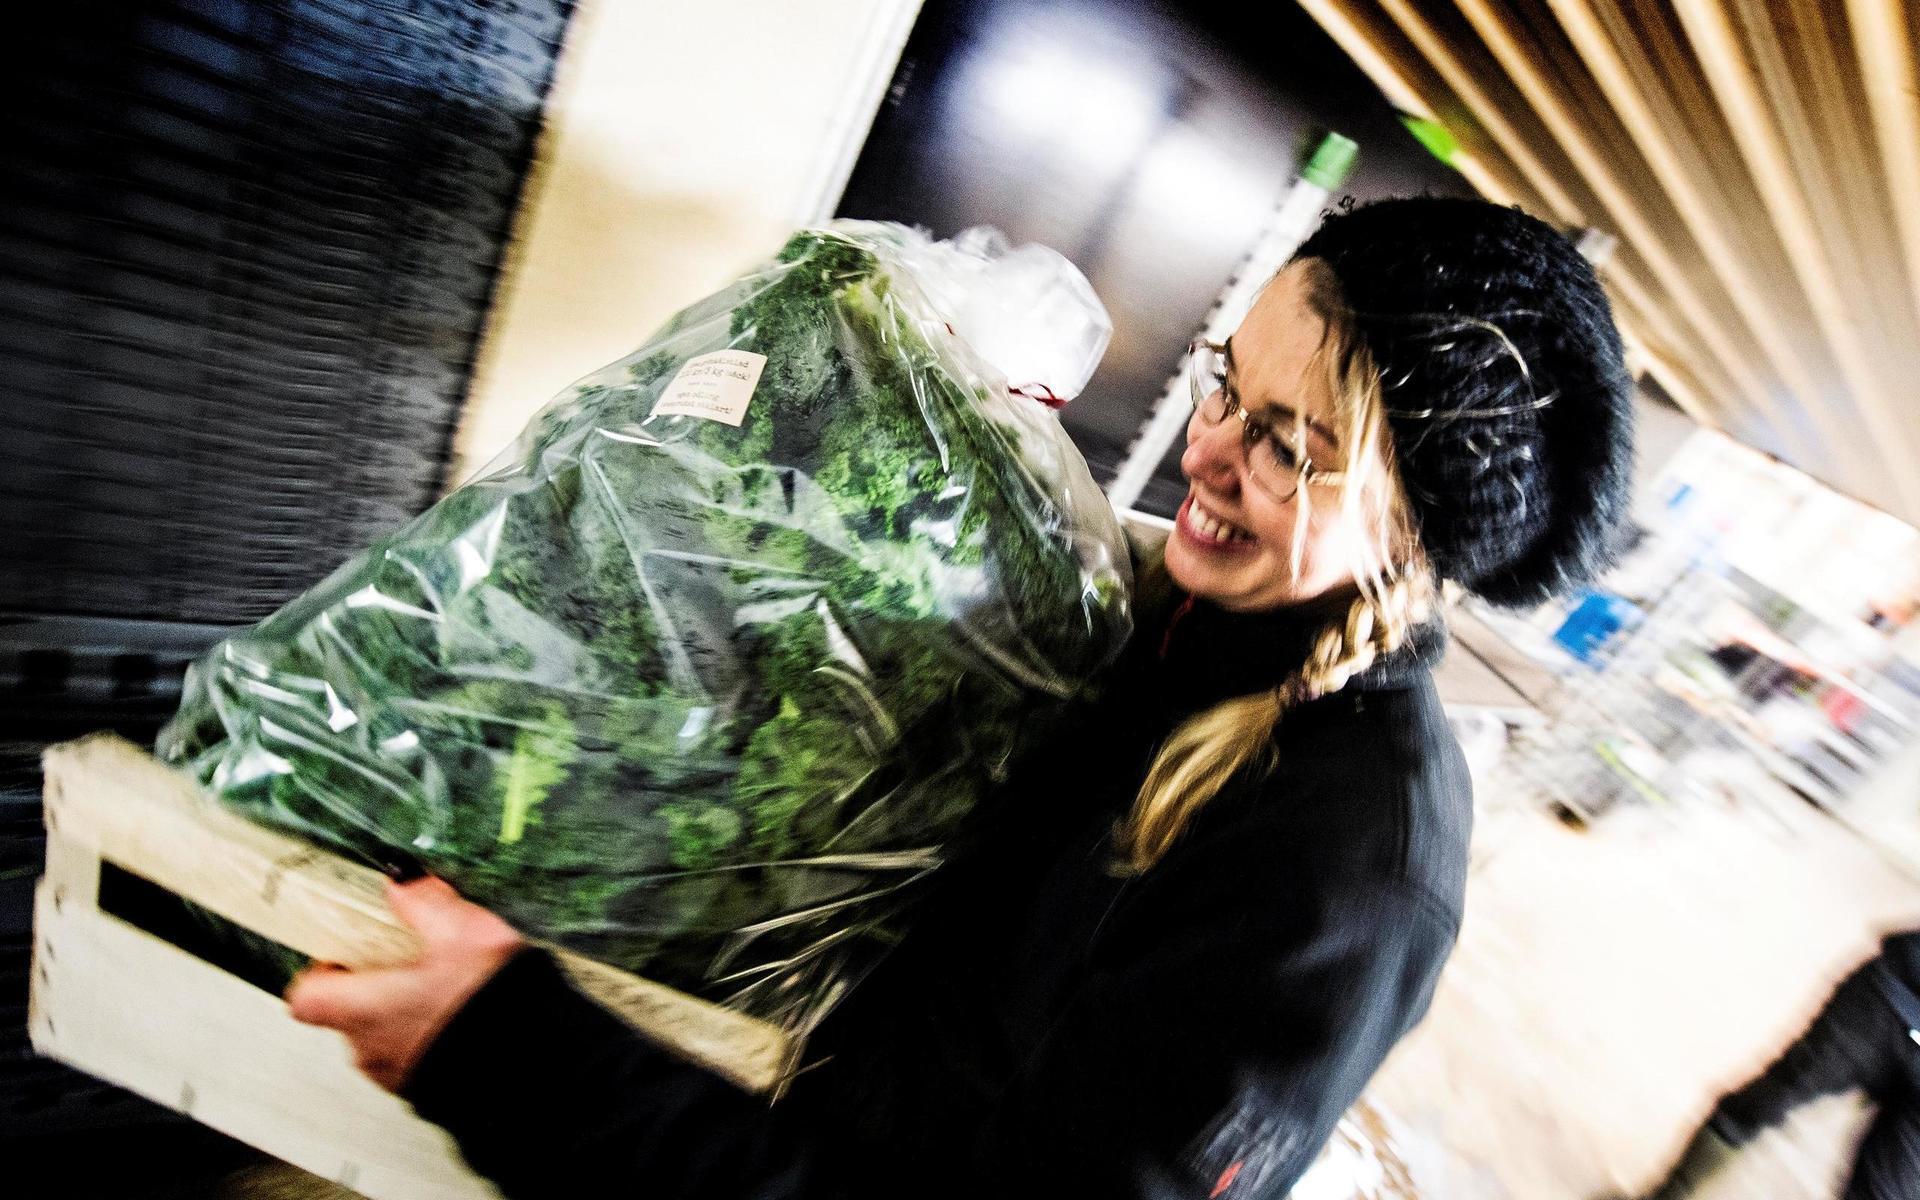 Mija Kanerot på Ugglarps Grönt hade fullt upp med grönsaksförsäljningen under lördagen. 